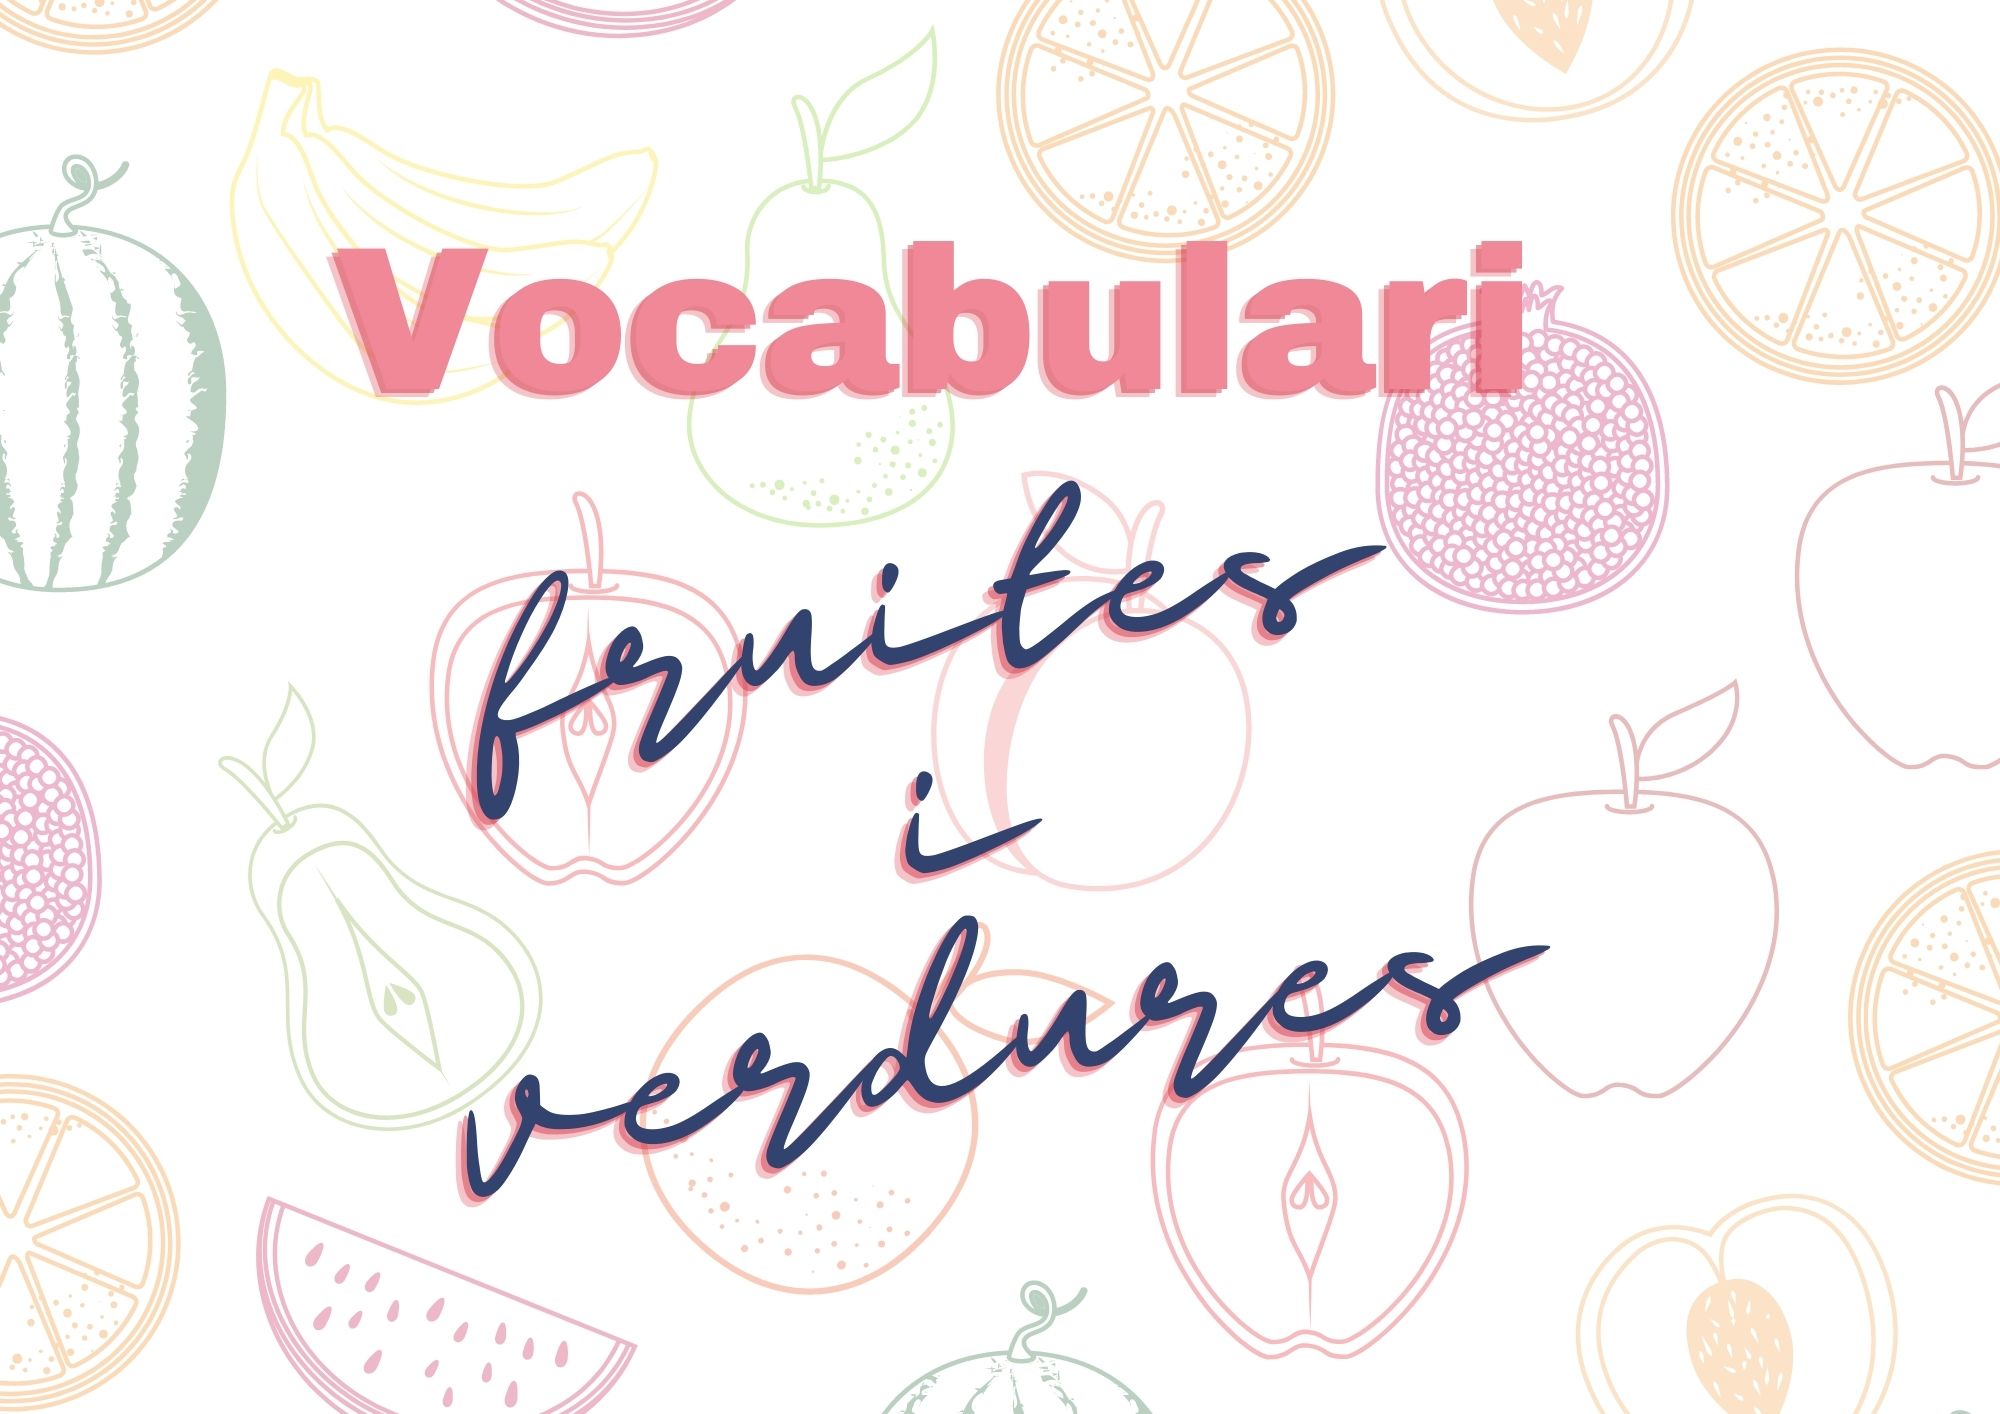 Vocabulari - Fruites i verdures